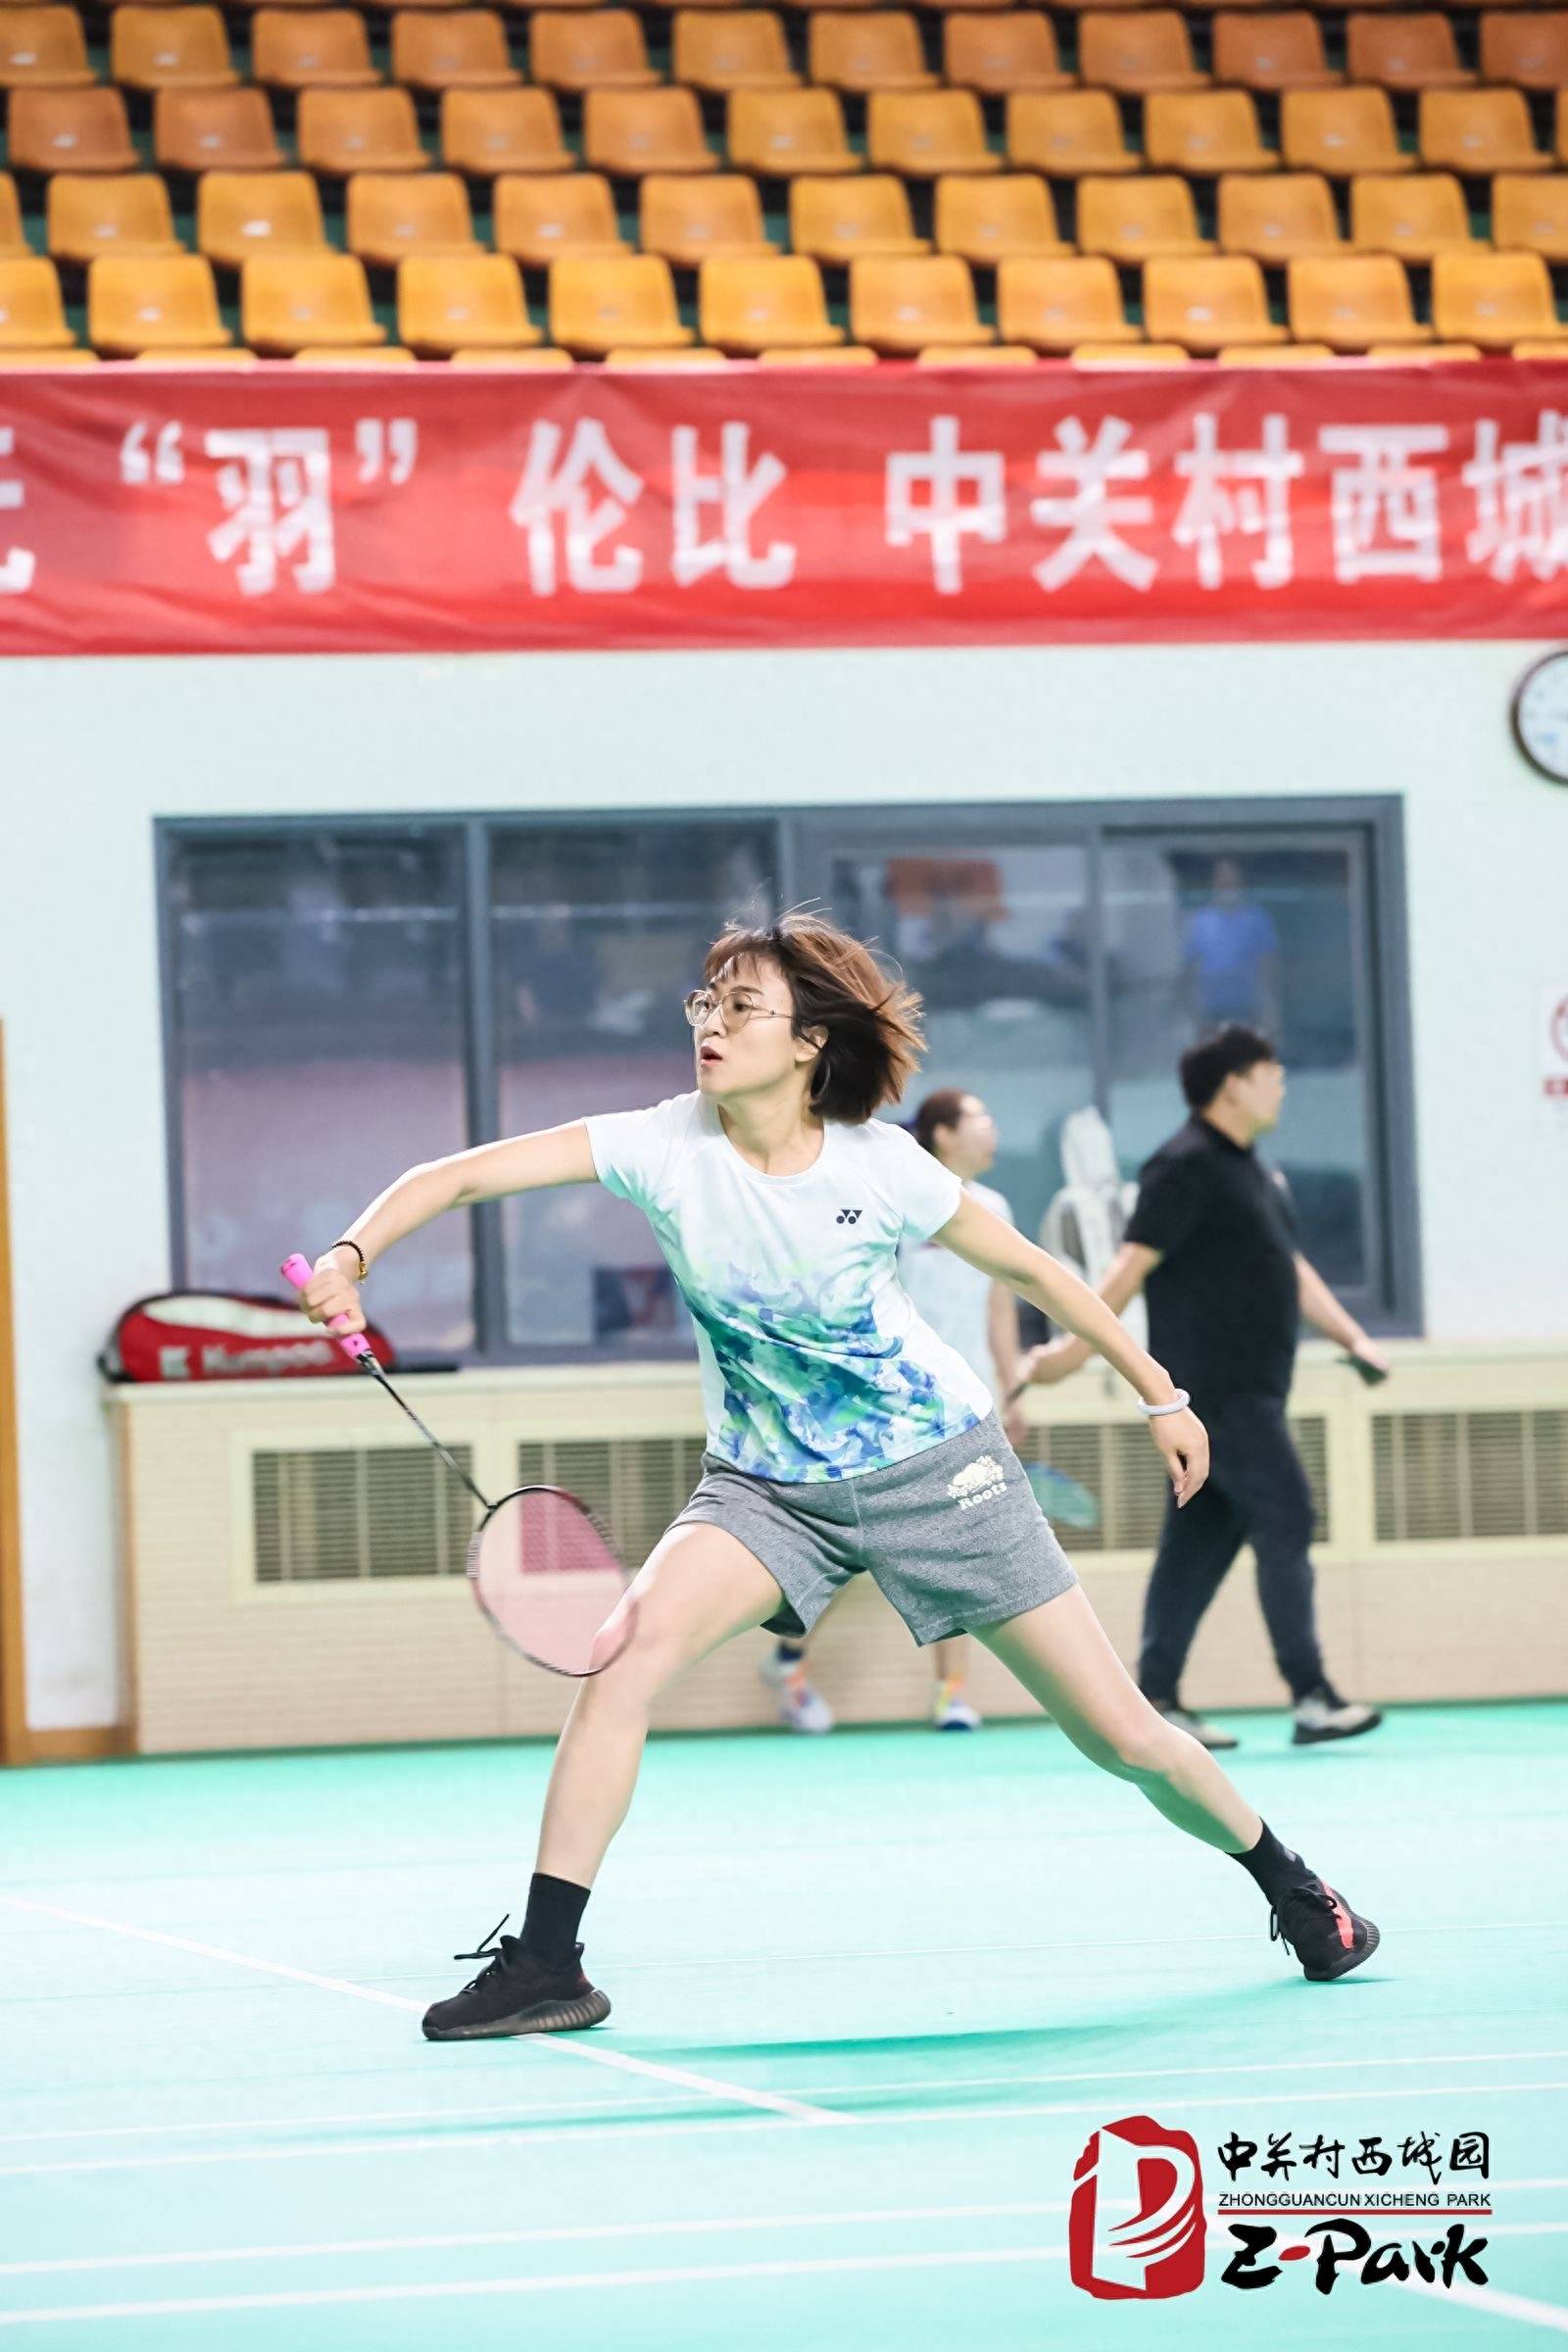 中关村西城园举办首届 “金科新区杯”羽毛球赛，23支代表队参赛